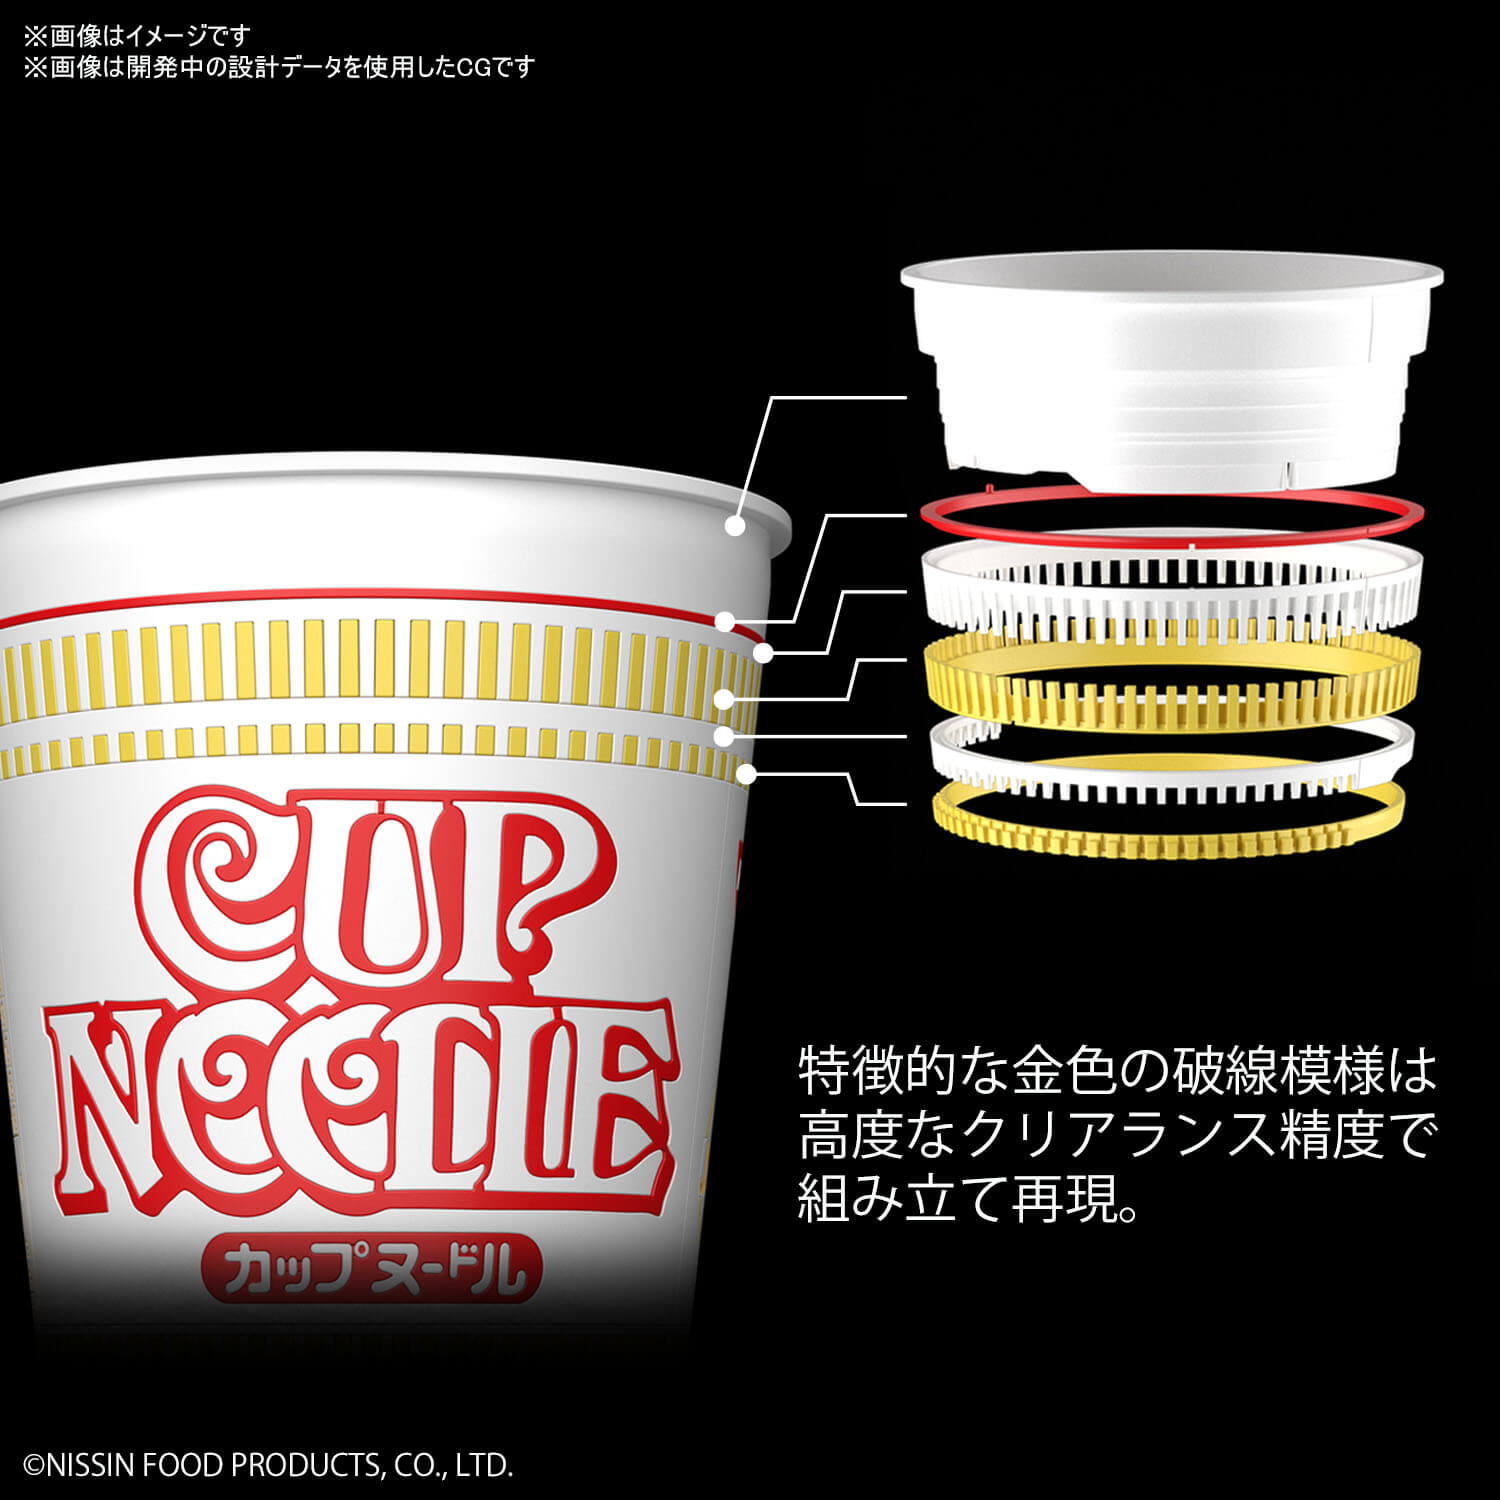 カップヌードル プラモデル CUP NOODLE PLASTIC MODEL 合味道 塑膠模型11